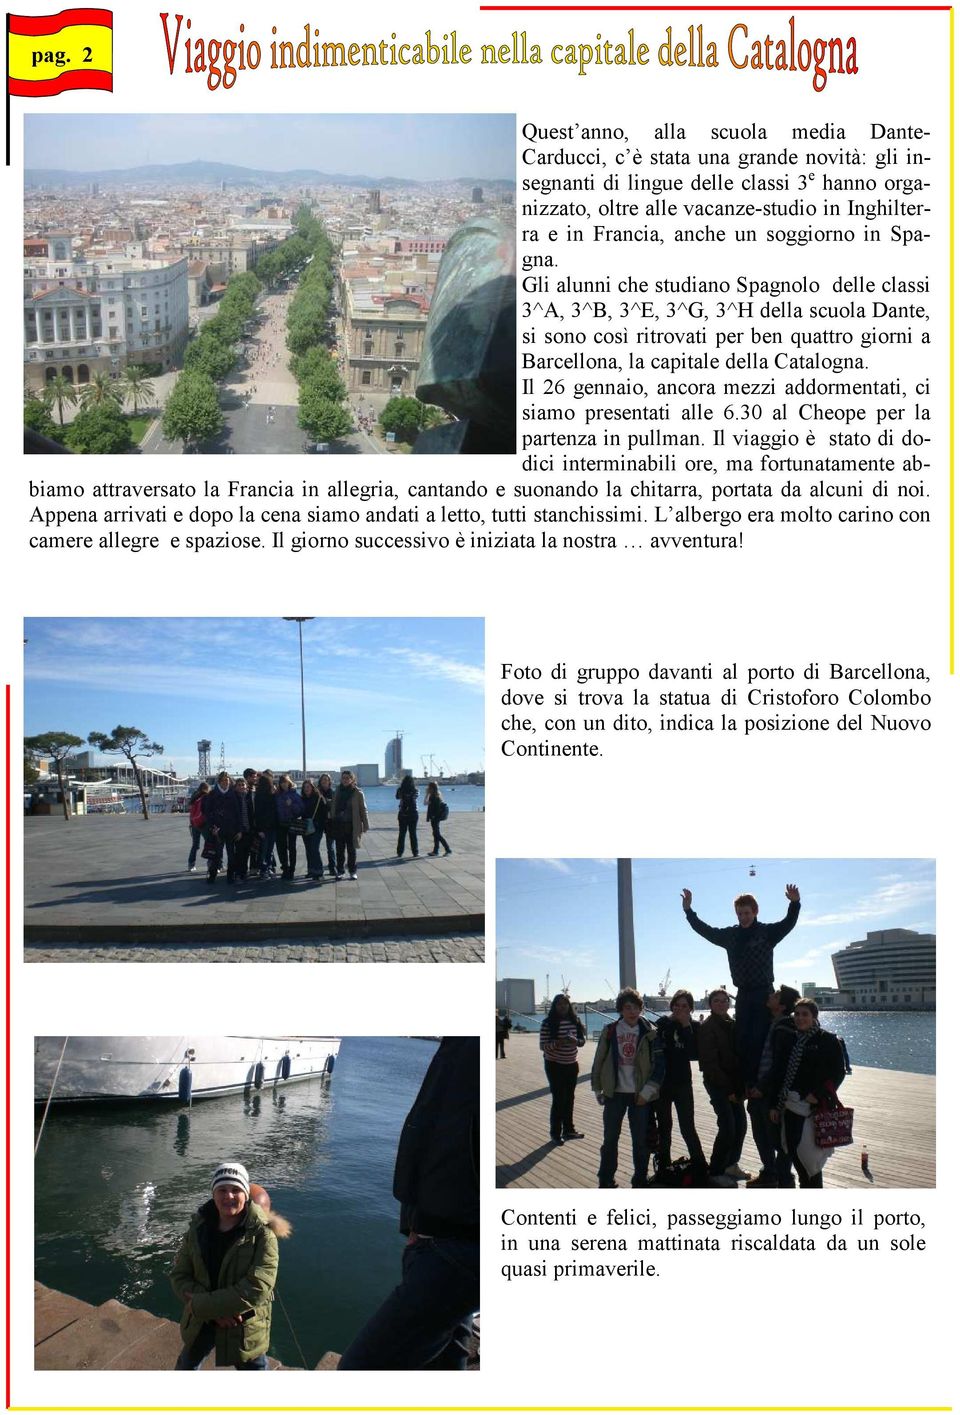 Gli alunni che studiano Spagnolo delle classi 3^A, 3^B, 3^E, 3^G, 3^H della scuola Dante, si sono così ritrovati per ben quattro giorni a Barcellona, la capitale della Catalogna.